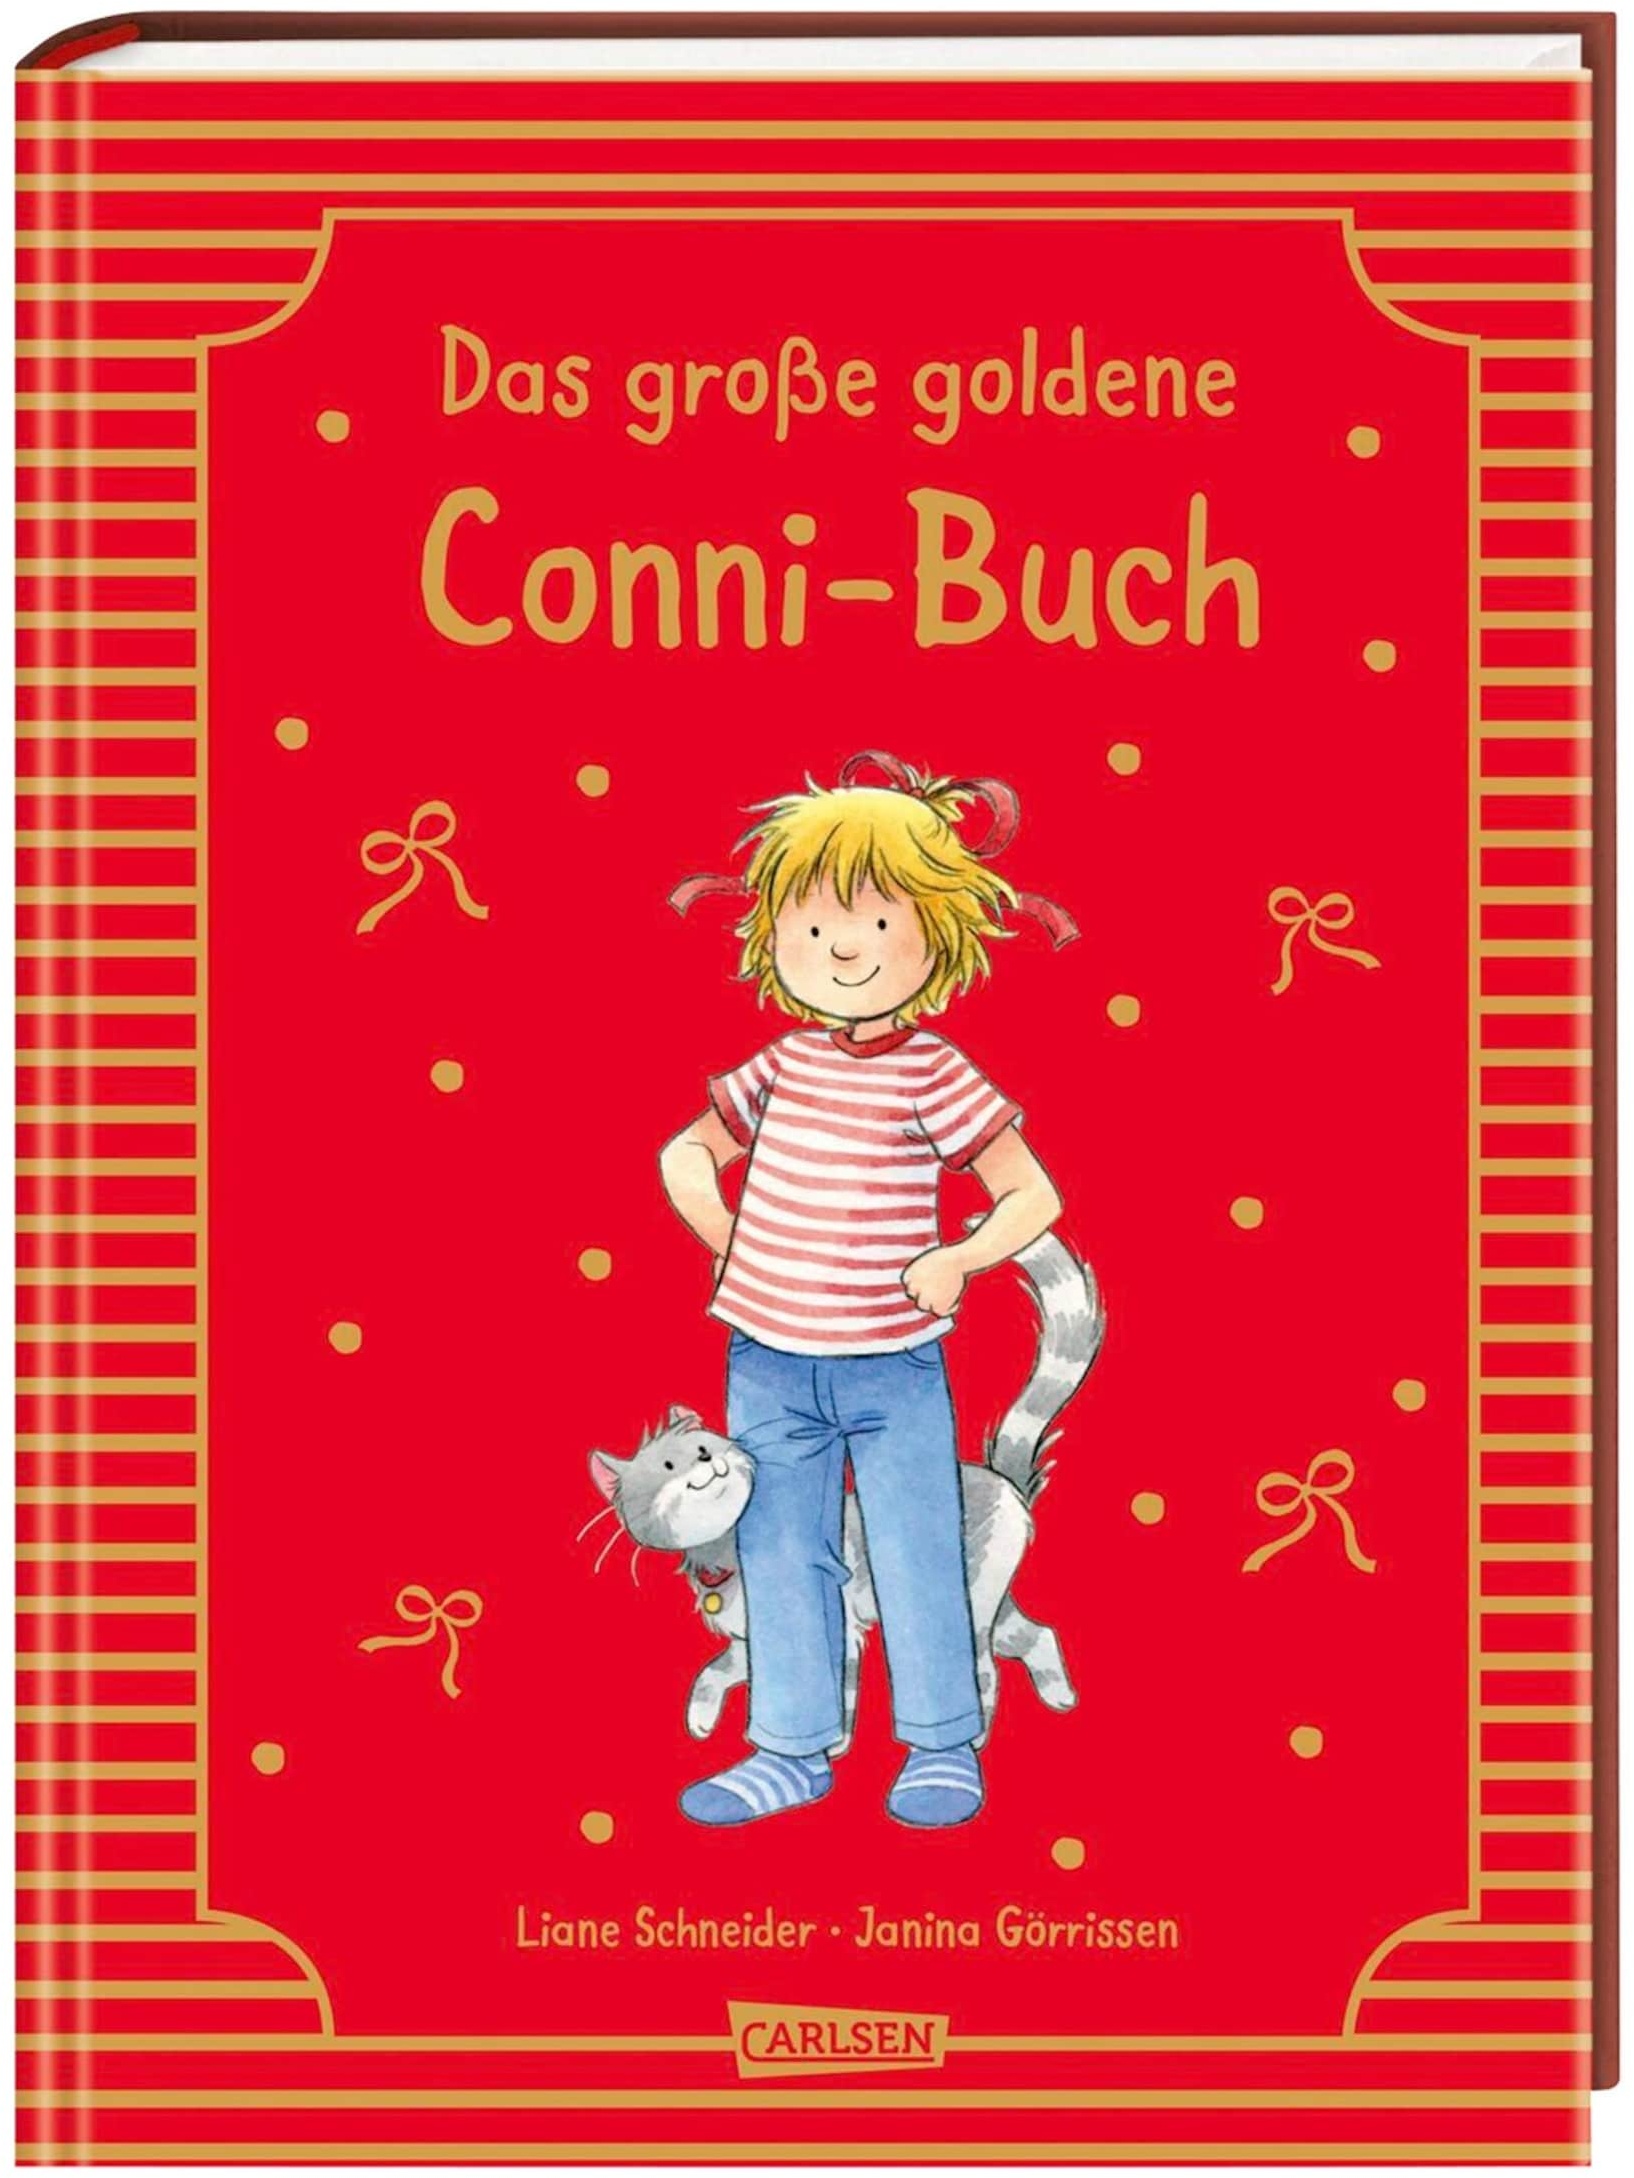 Carlsen Verlag MEINE FREUNDIN CONNI Bilderbuch Das große goldene Conni-Buch, mehrfarbig